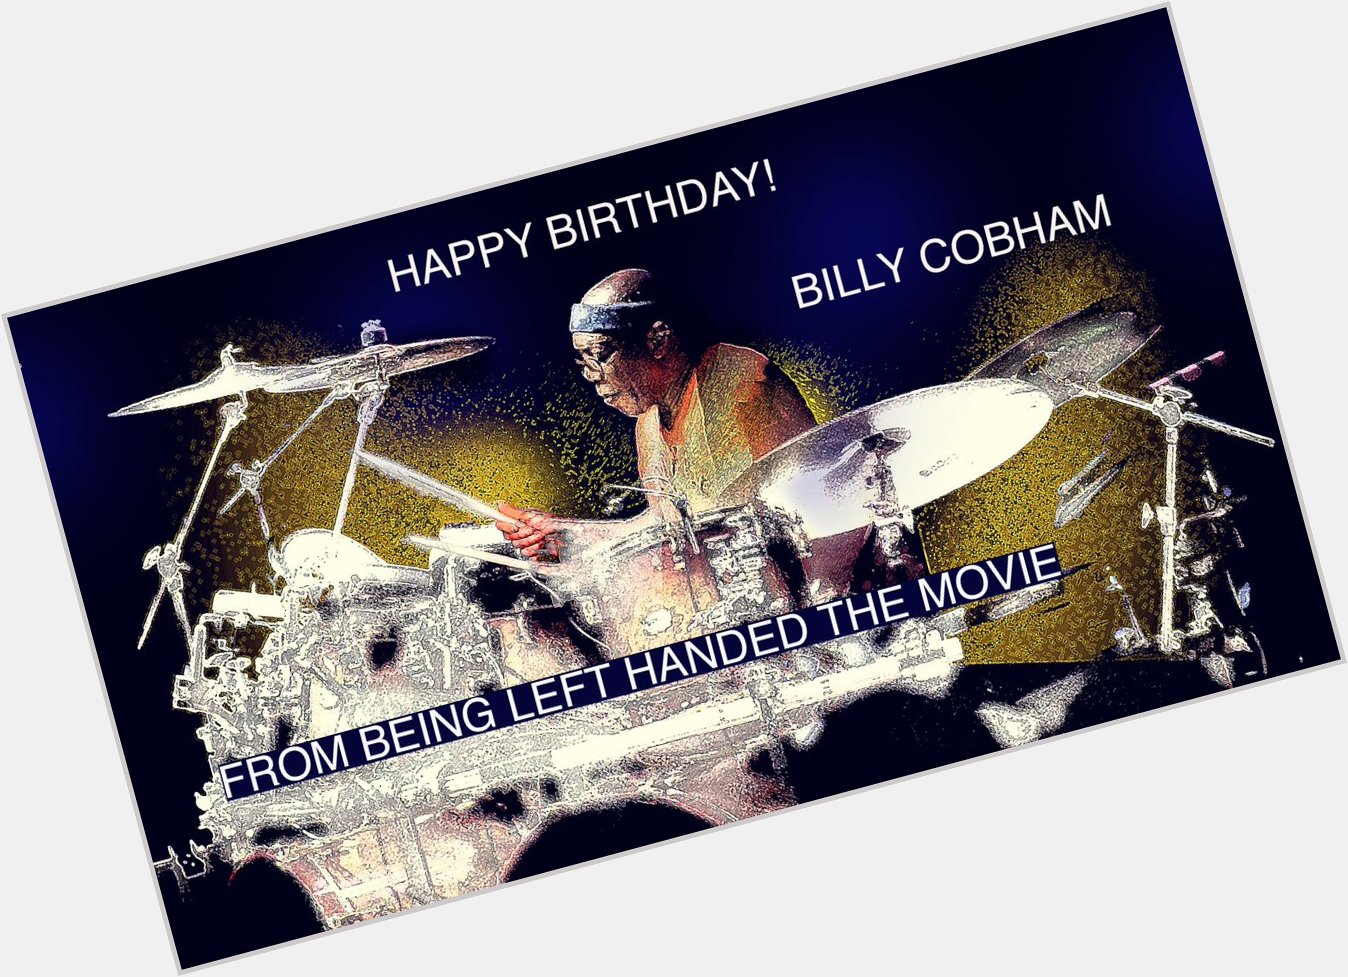 Happy Birthday, amazing lefty drummer Billy Cobham 